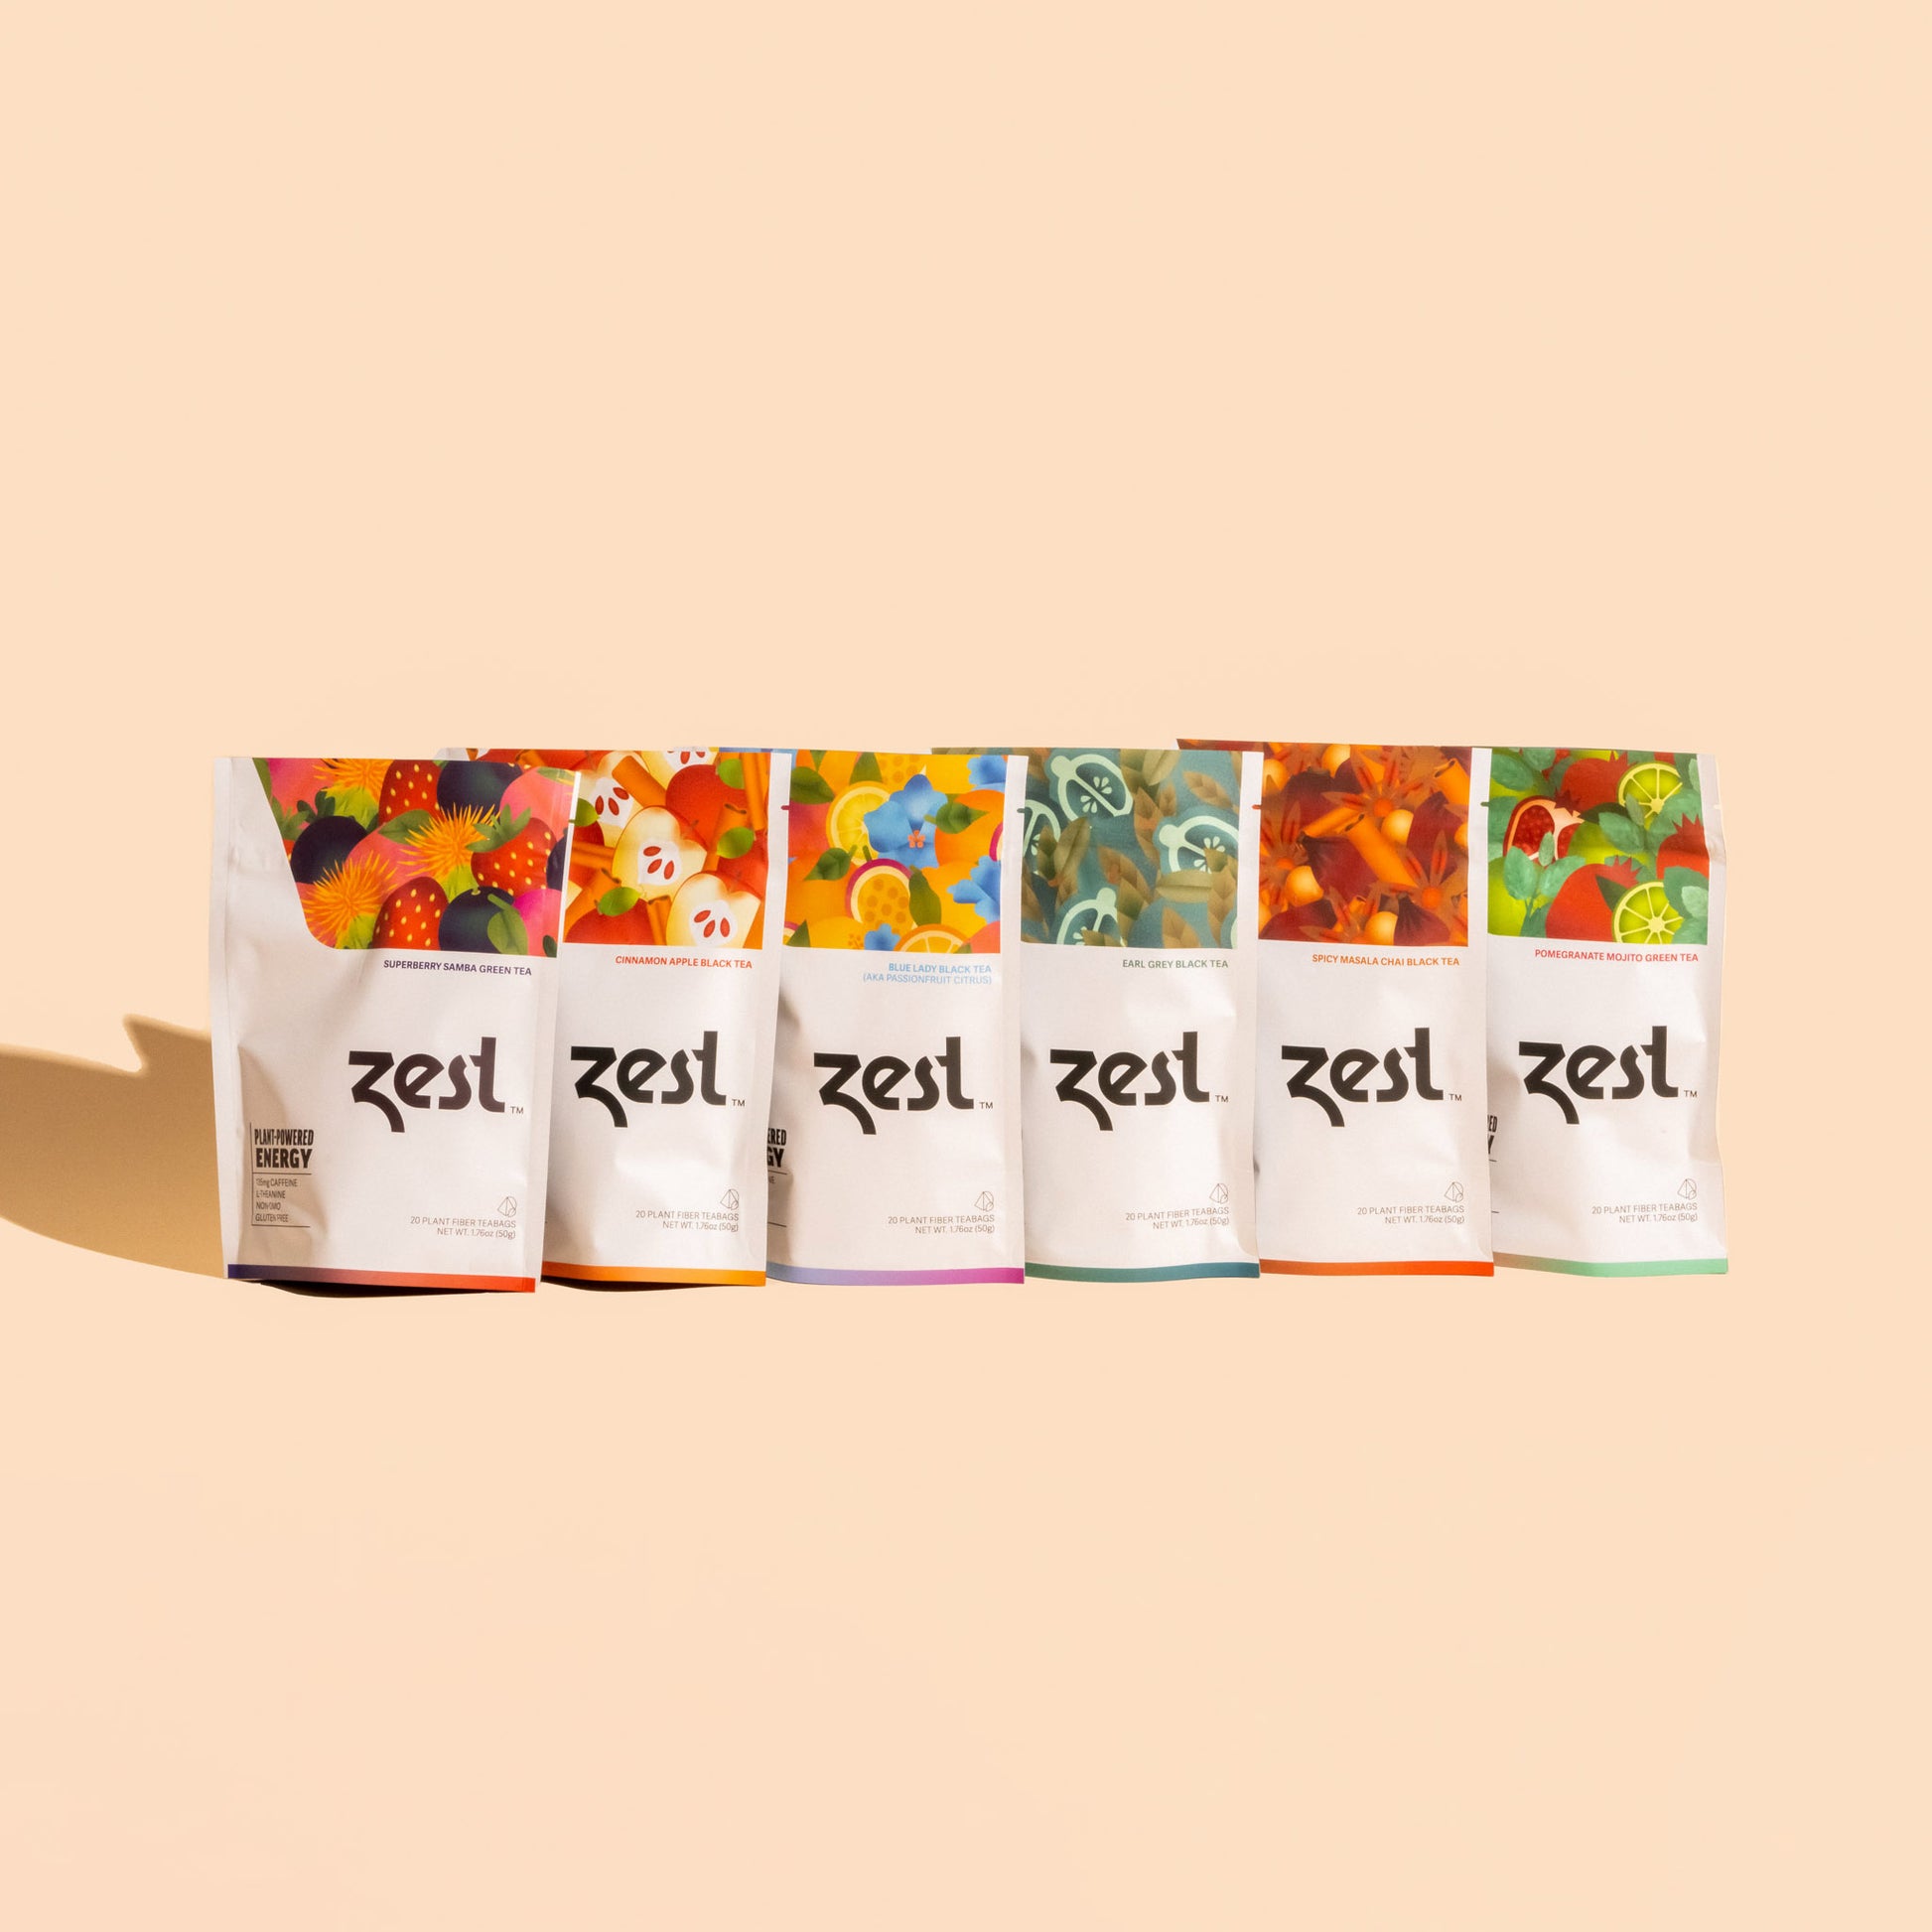 Zest Sampler Pack Plant-Powered Energy - High Caffeine Mega Sampler Pack